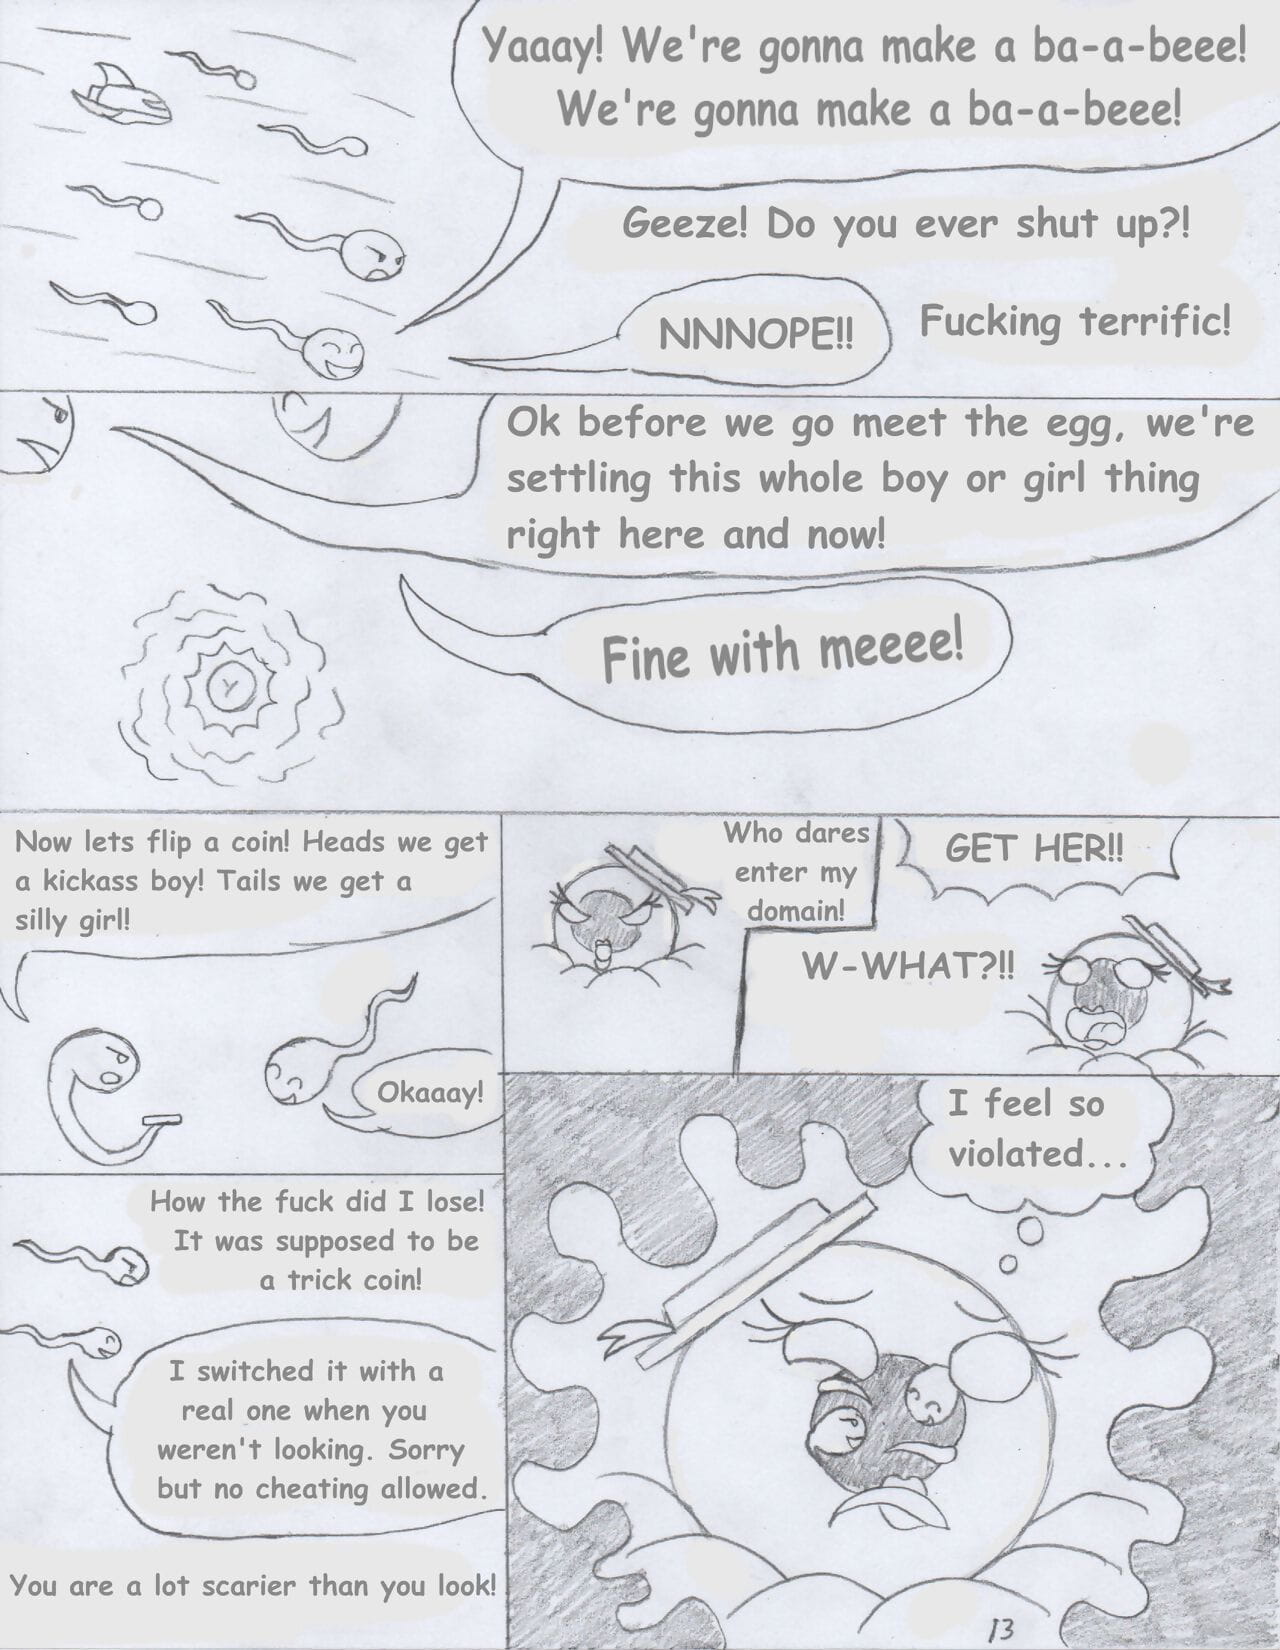 foxtide888 스케치 만화 갤러리 2 부품 3 page 1